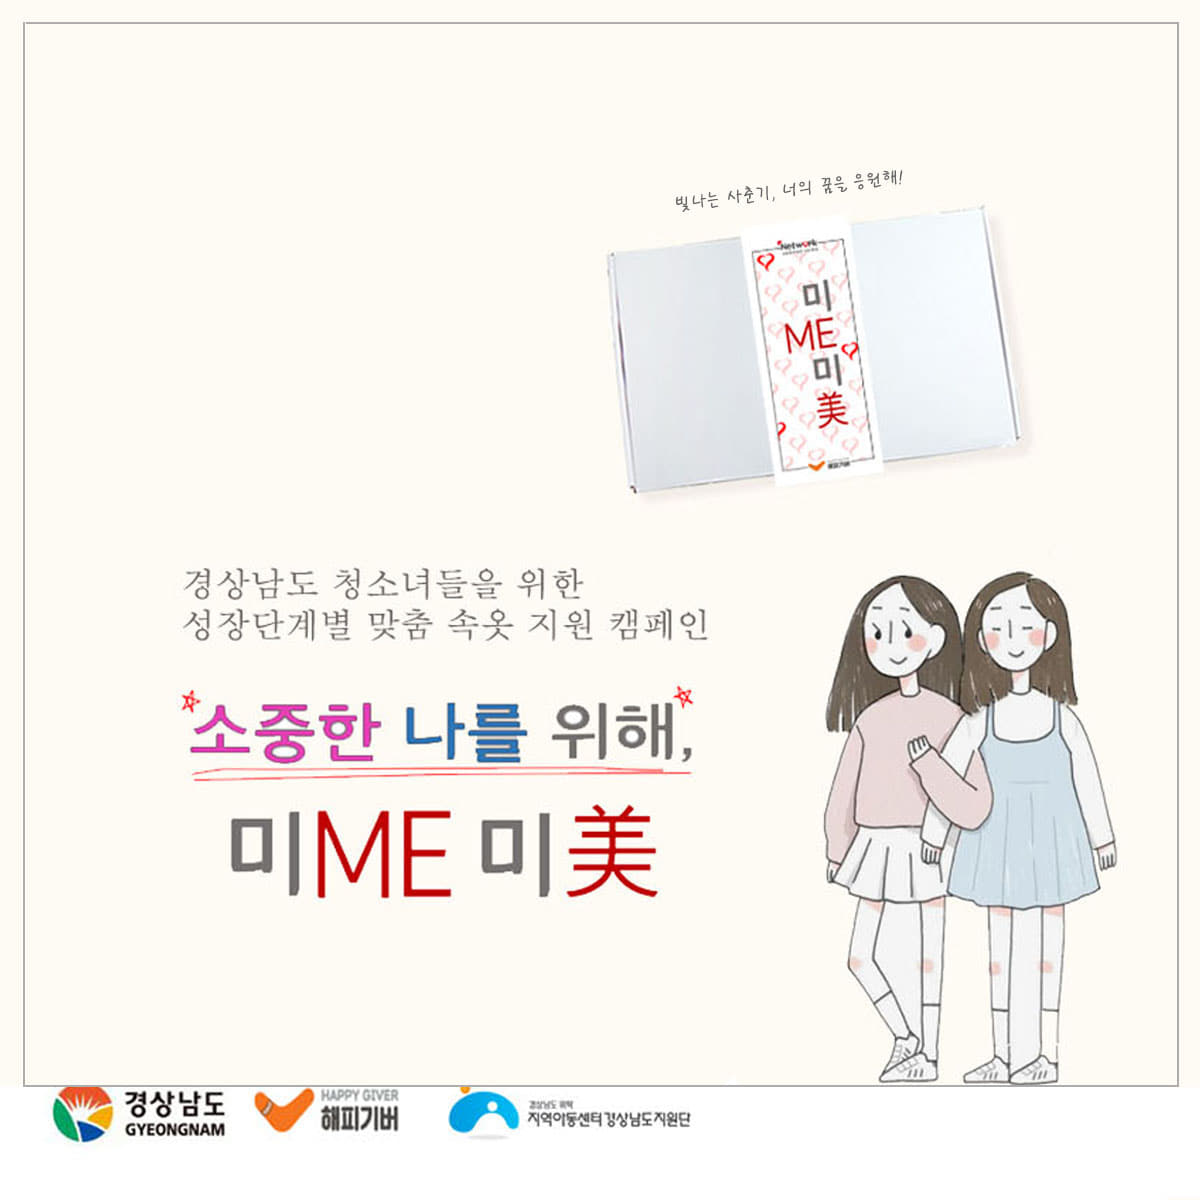 [미앤미 프로젝트] 경남 성장단계별 속옷지원 바우처온리원스